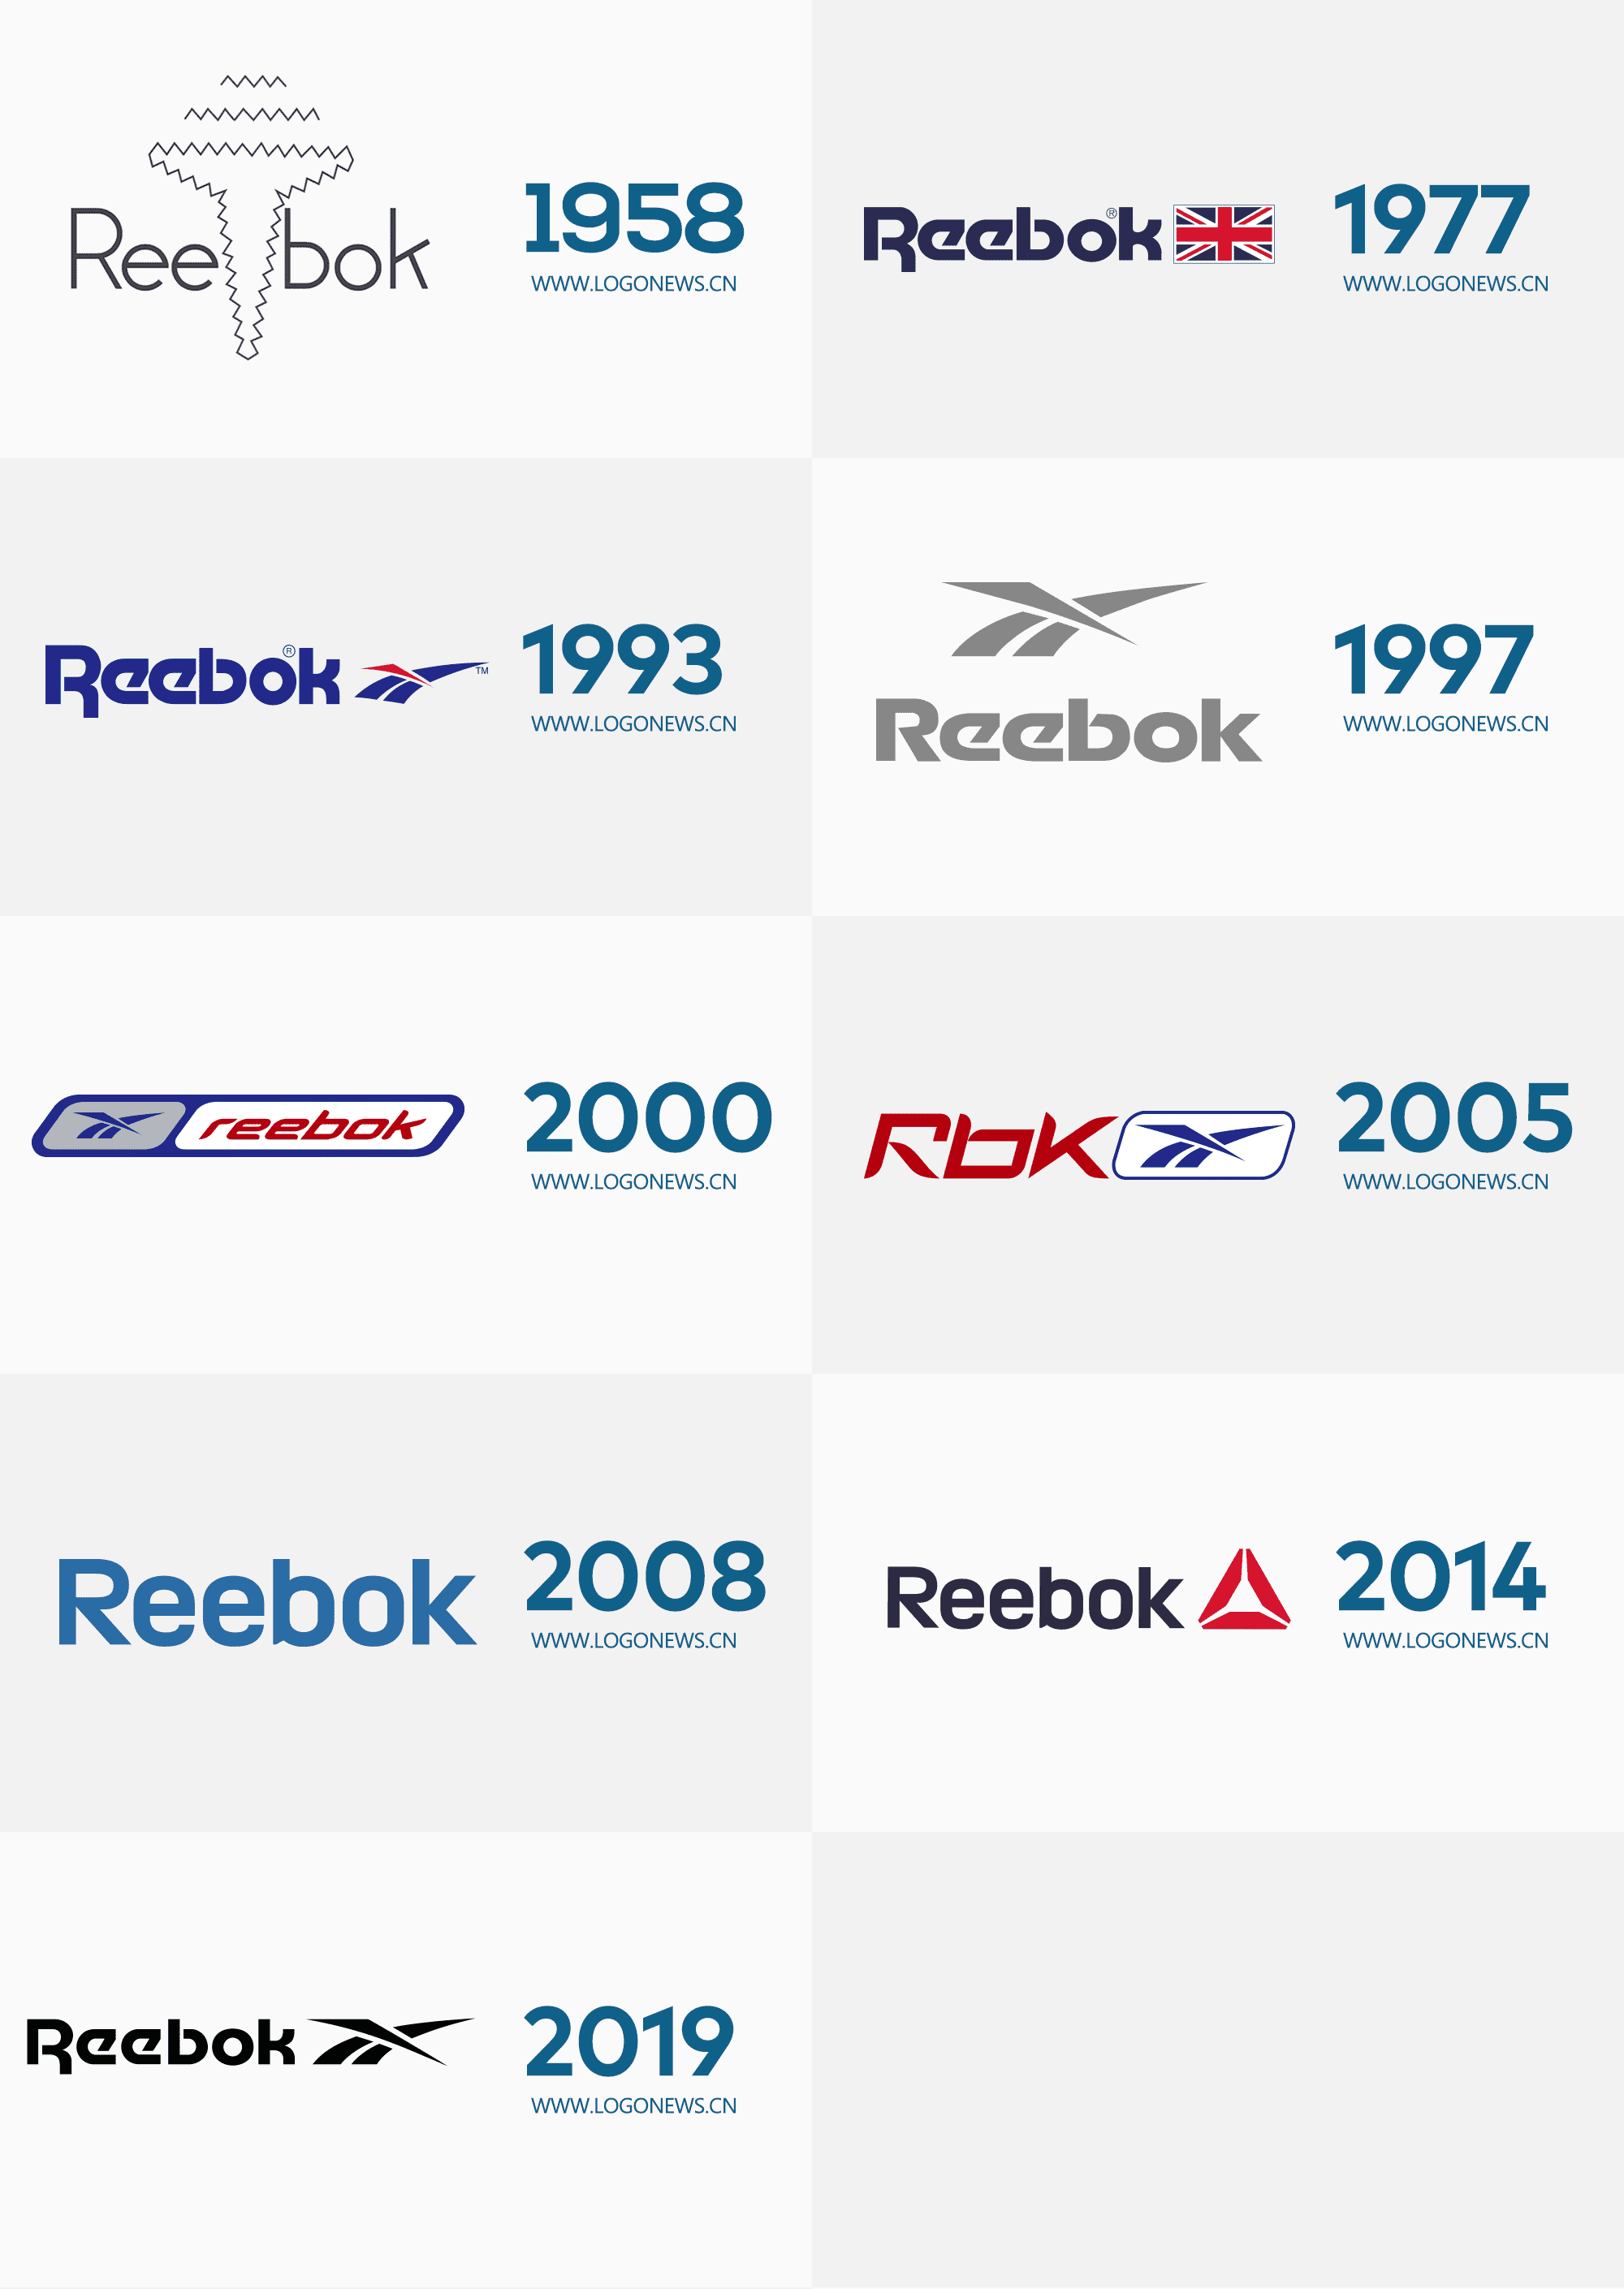 世界知名健身運動品牌reebok銳步時隔多年重啟舊logo 品牌癮 法博思品牌顧問